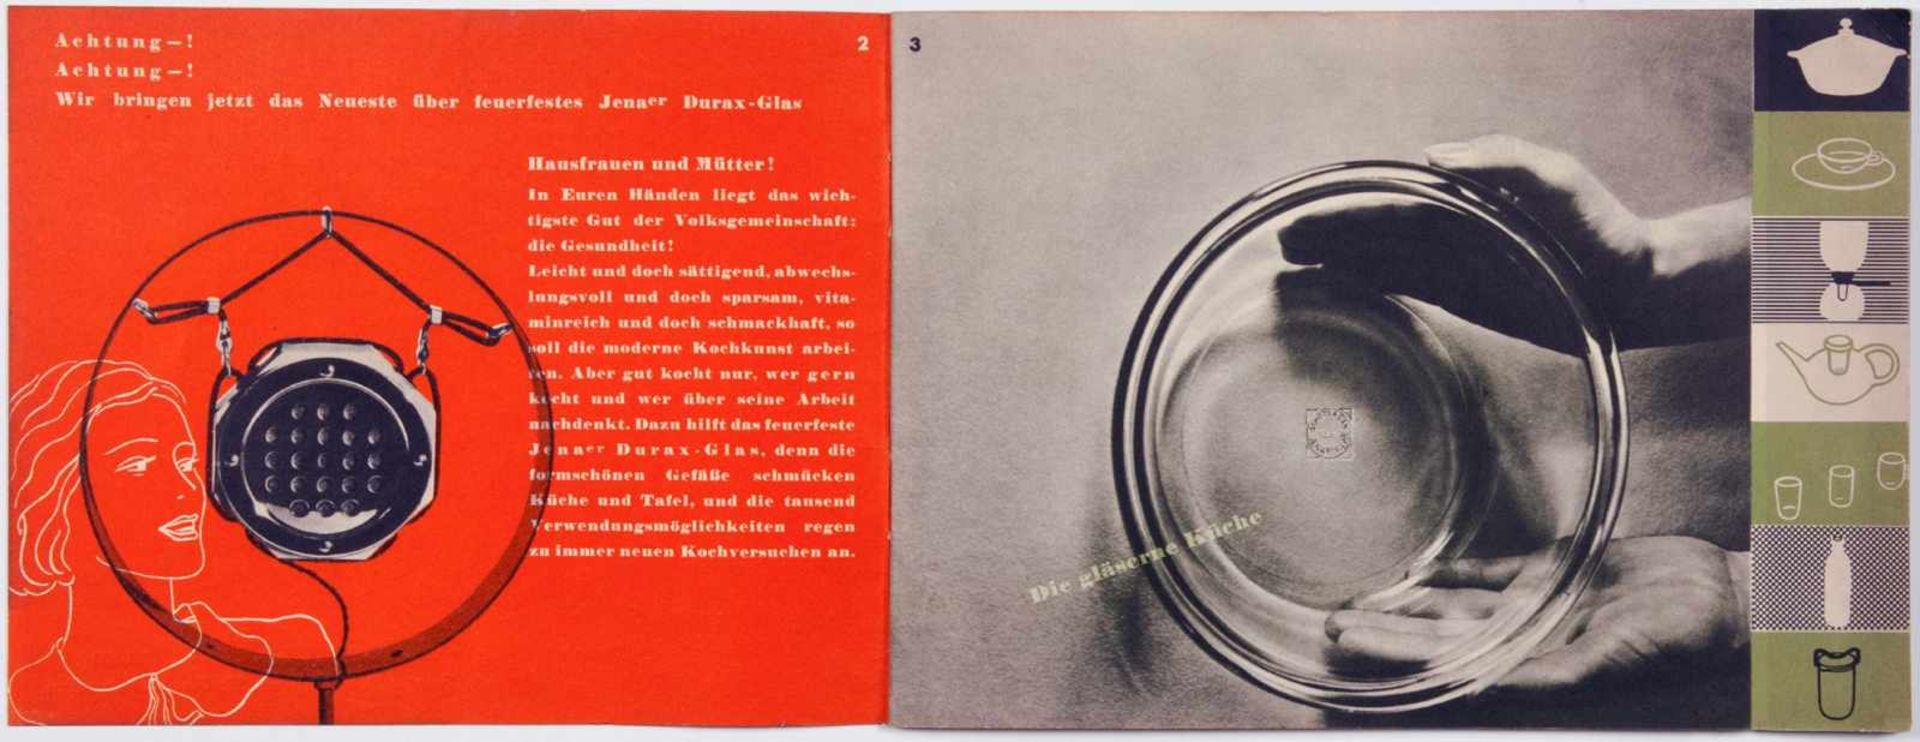 László Moholy-Nagy - Feuerfestes Jenaer Durax-Glas zum Backen, Braten, Dünsten und Einkochen.